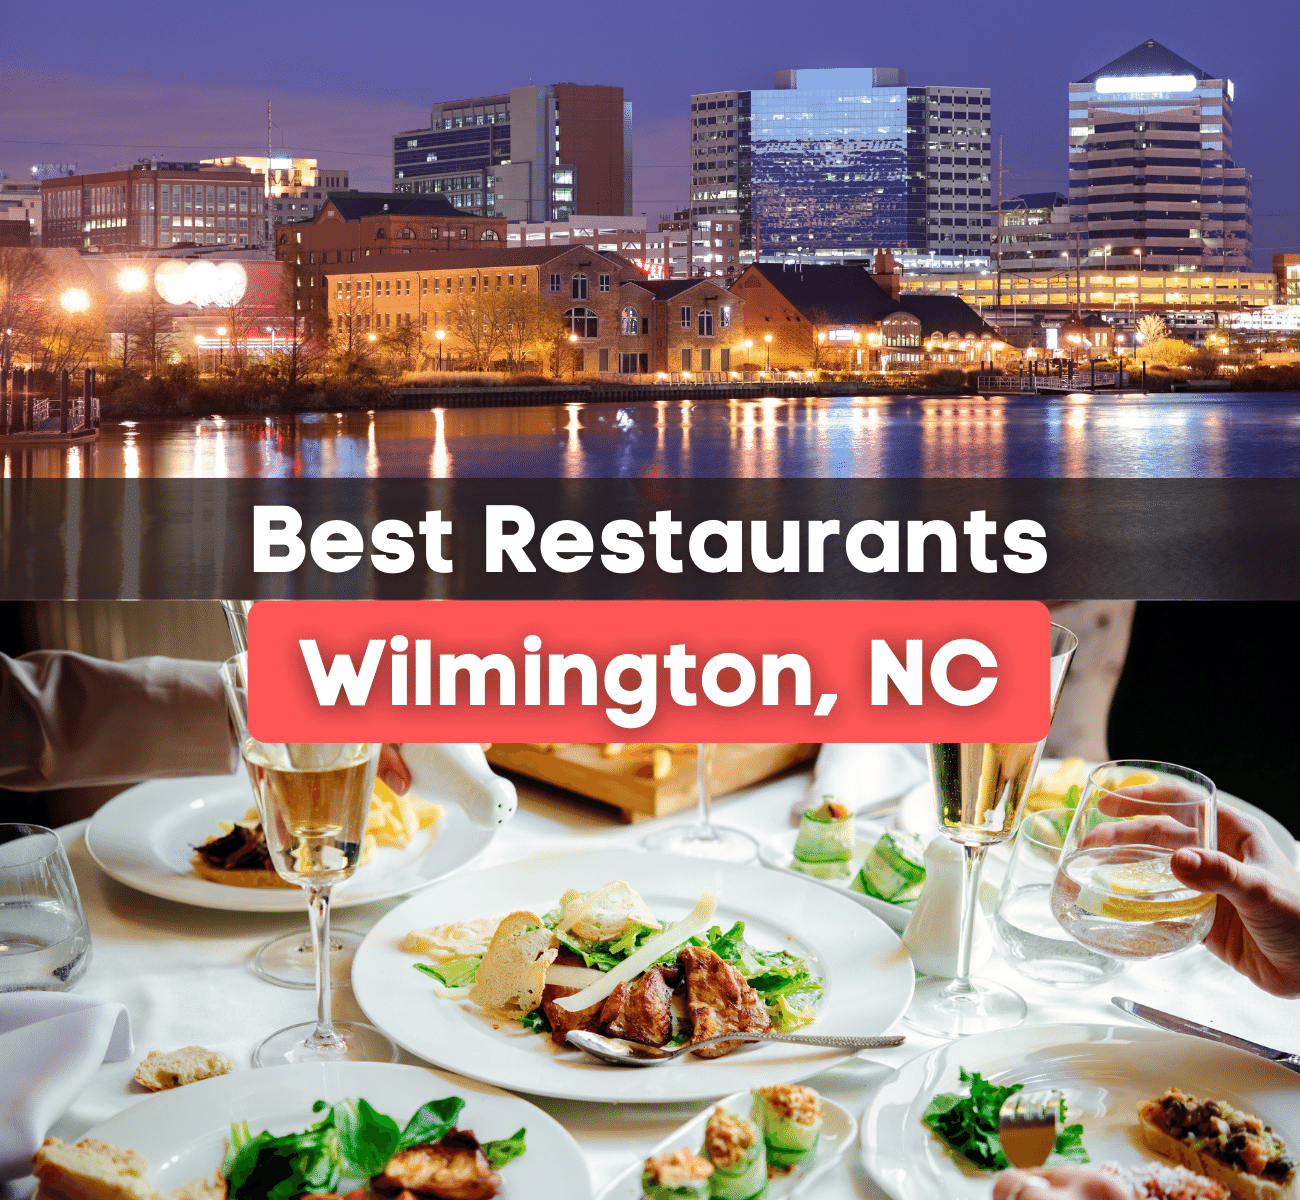 Best Restaurants in Wilmington NC - The best places to eat in Wilmington!